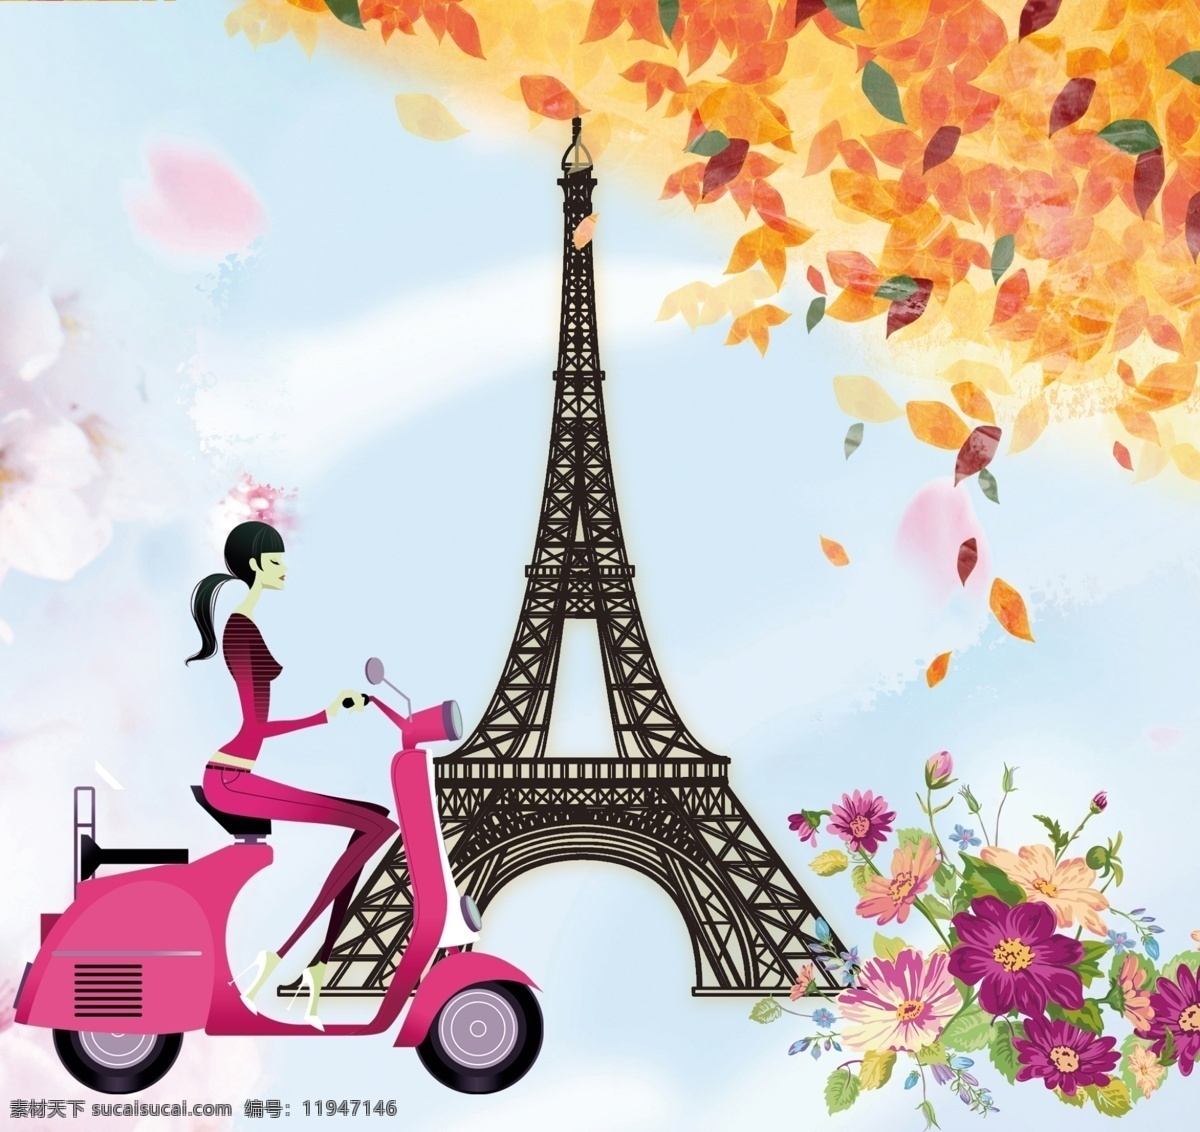 欧美 风情 高清 欧美风格 欧美风情 欧美复古 艾菲尔铁塔 铁塔 巴黎铁塔 自行车 树叶 皇冠 分层 文化艺术 传统文化